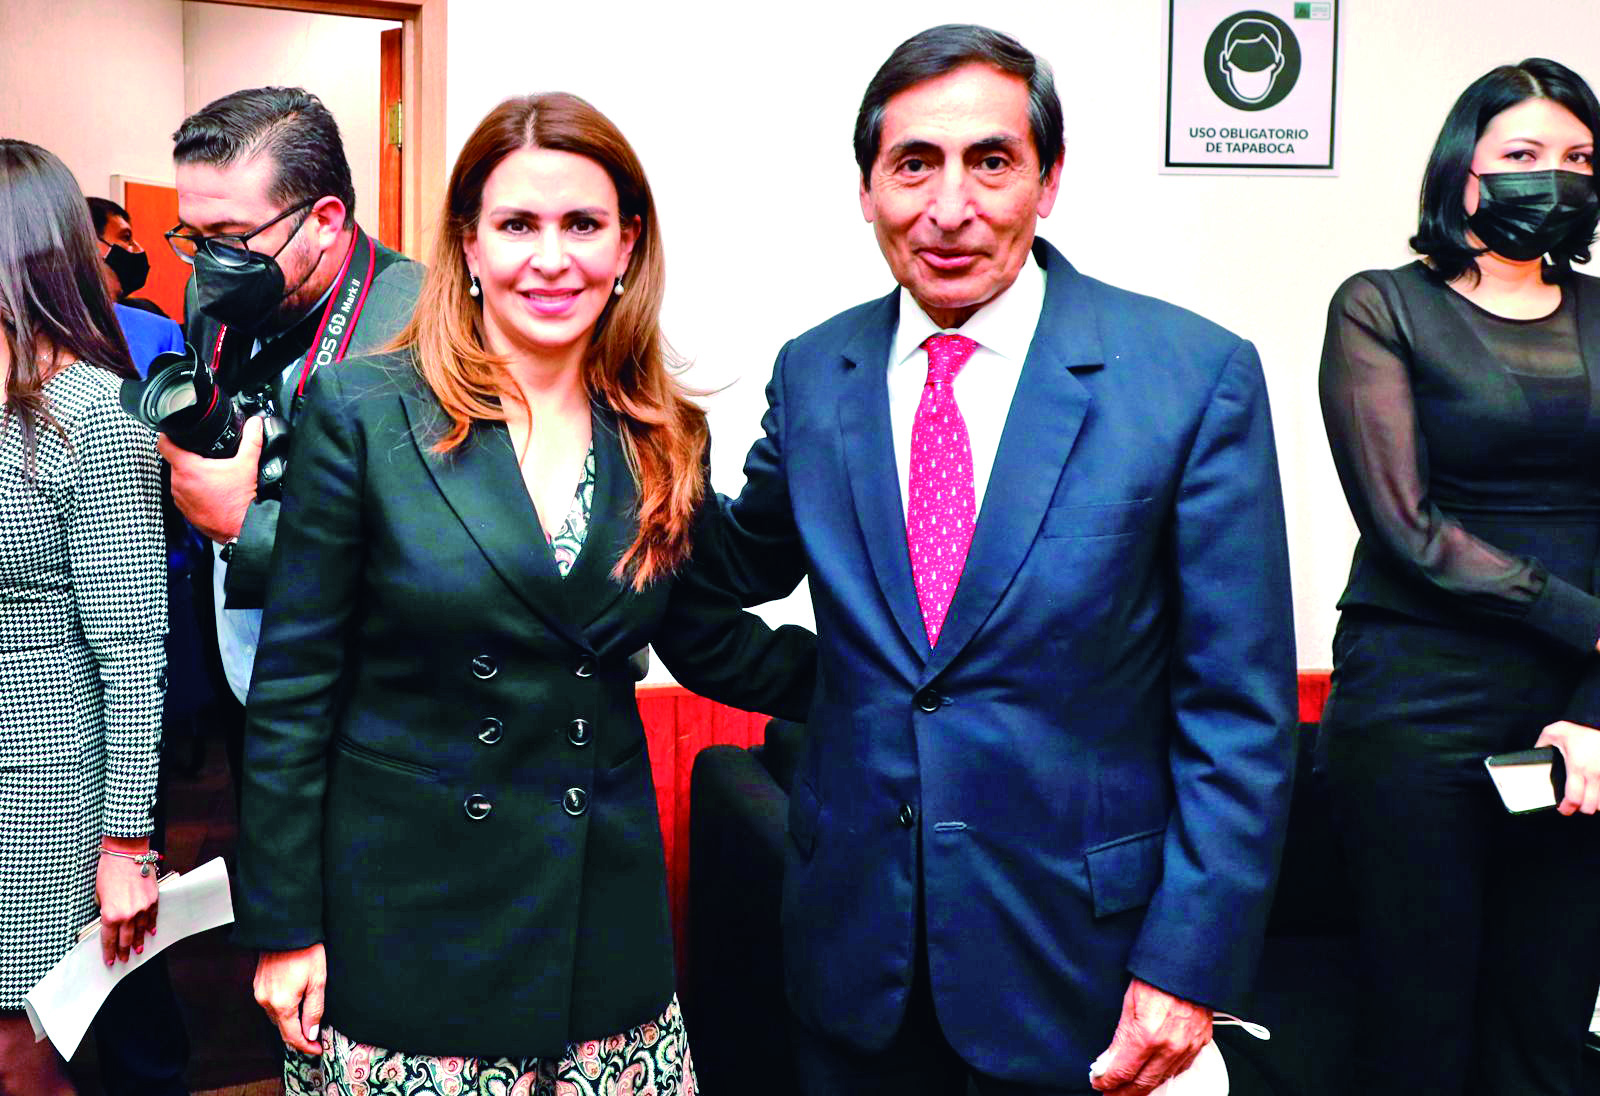 La diputada federal Almara Carolinia Viggiano y el secretario de Hacienda, Rogelio Ramirez, en la comparesencia del segundo, en la Cámara de San Lázaro.